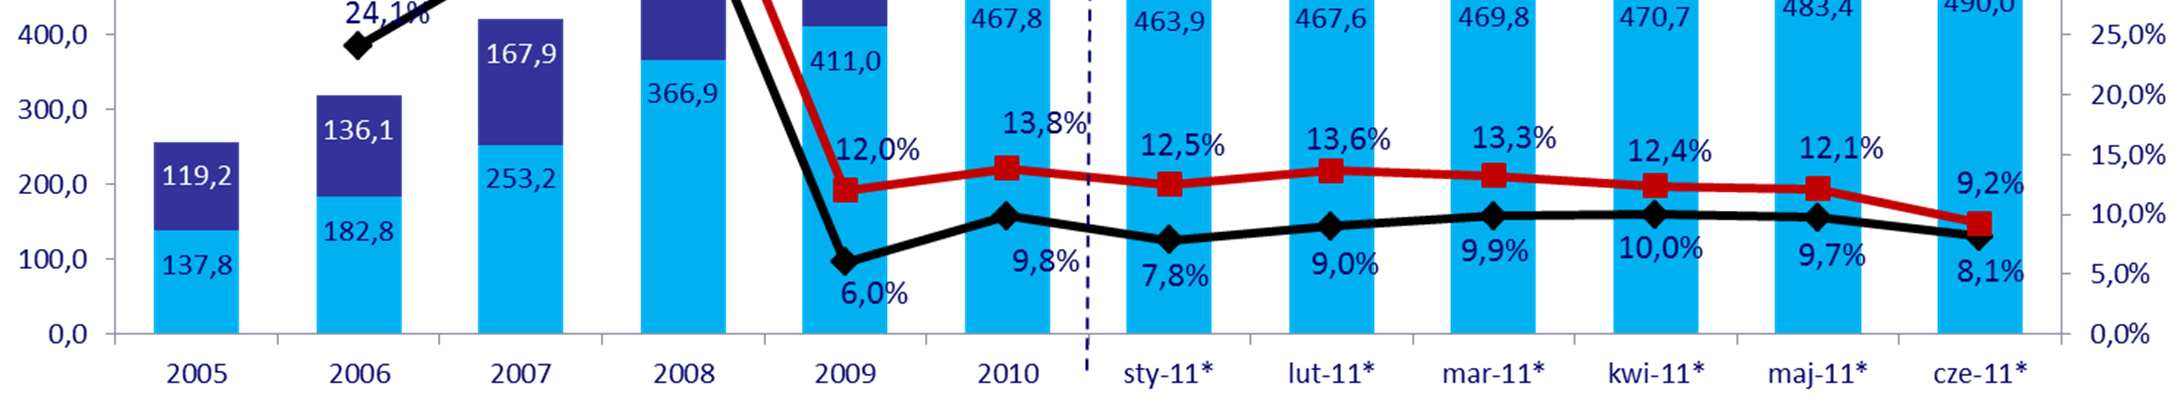 Zgodnie z naszym oczekiwaniem rynek kredytów w Polsce zaczął rosnąć w II kwartale 2011 r. mld zł Wartość kredytów detalicznych w Polsce przyrosła o 5% w ciągu pierwszego półrocza 2011 r.